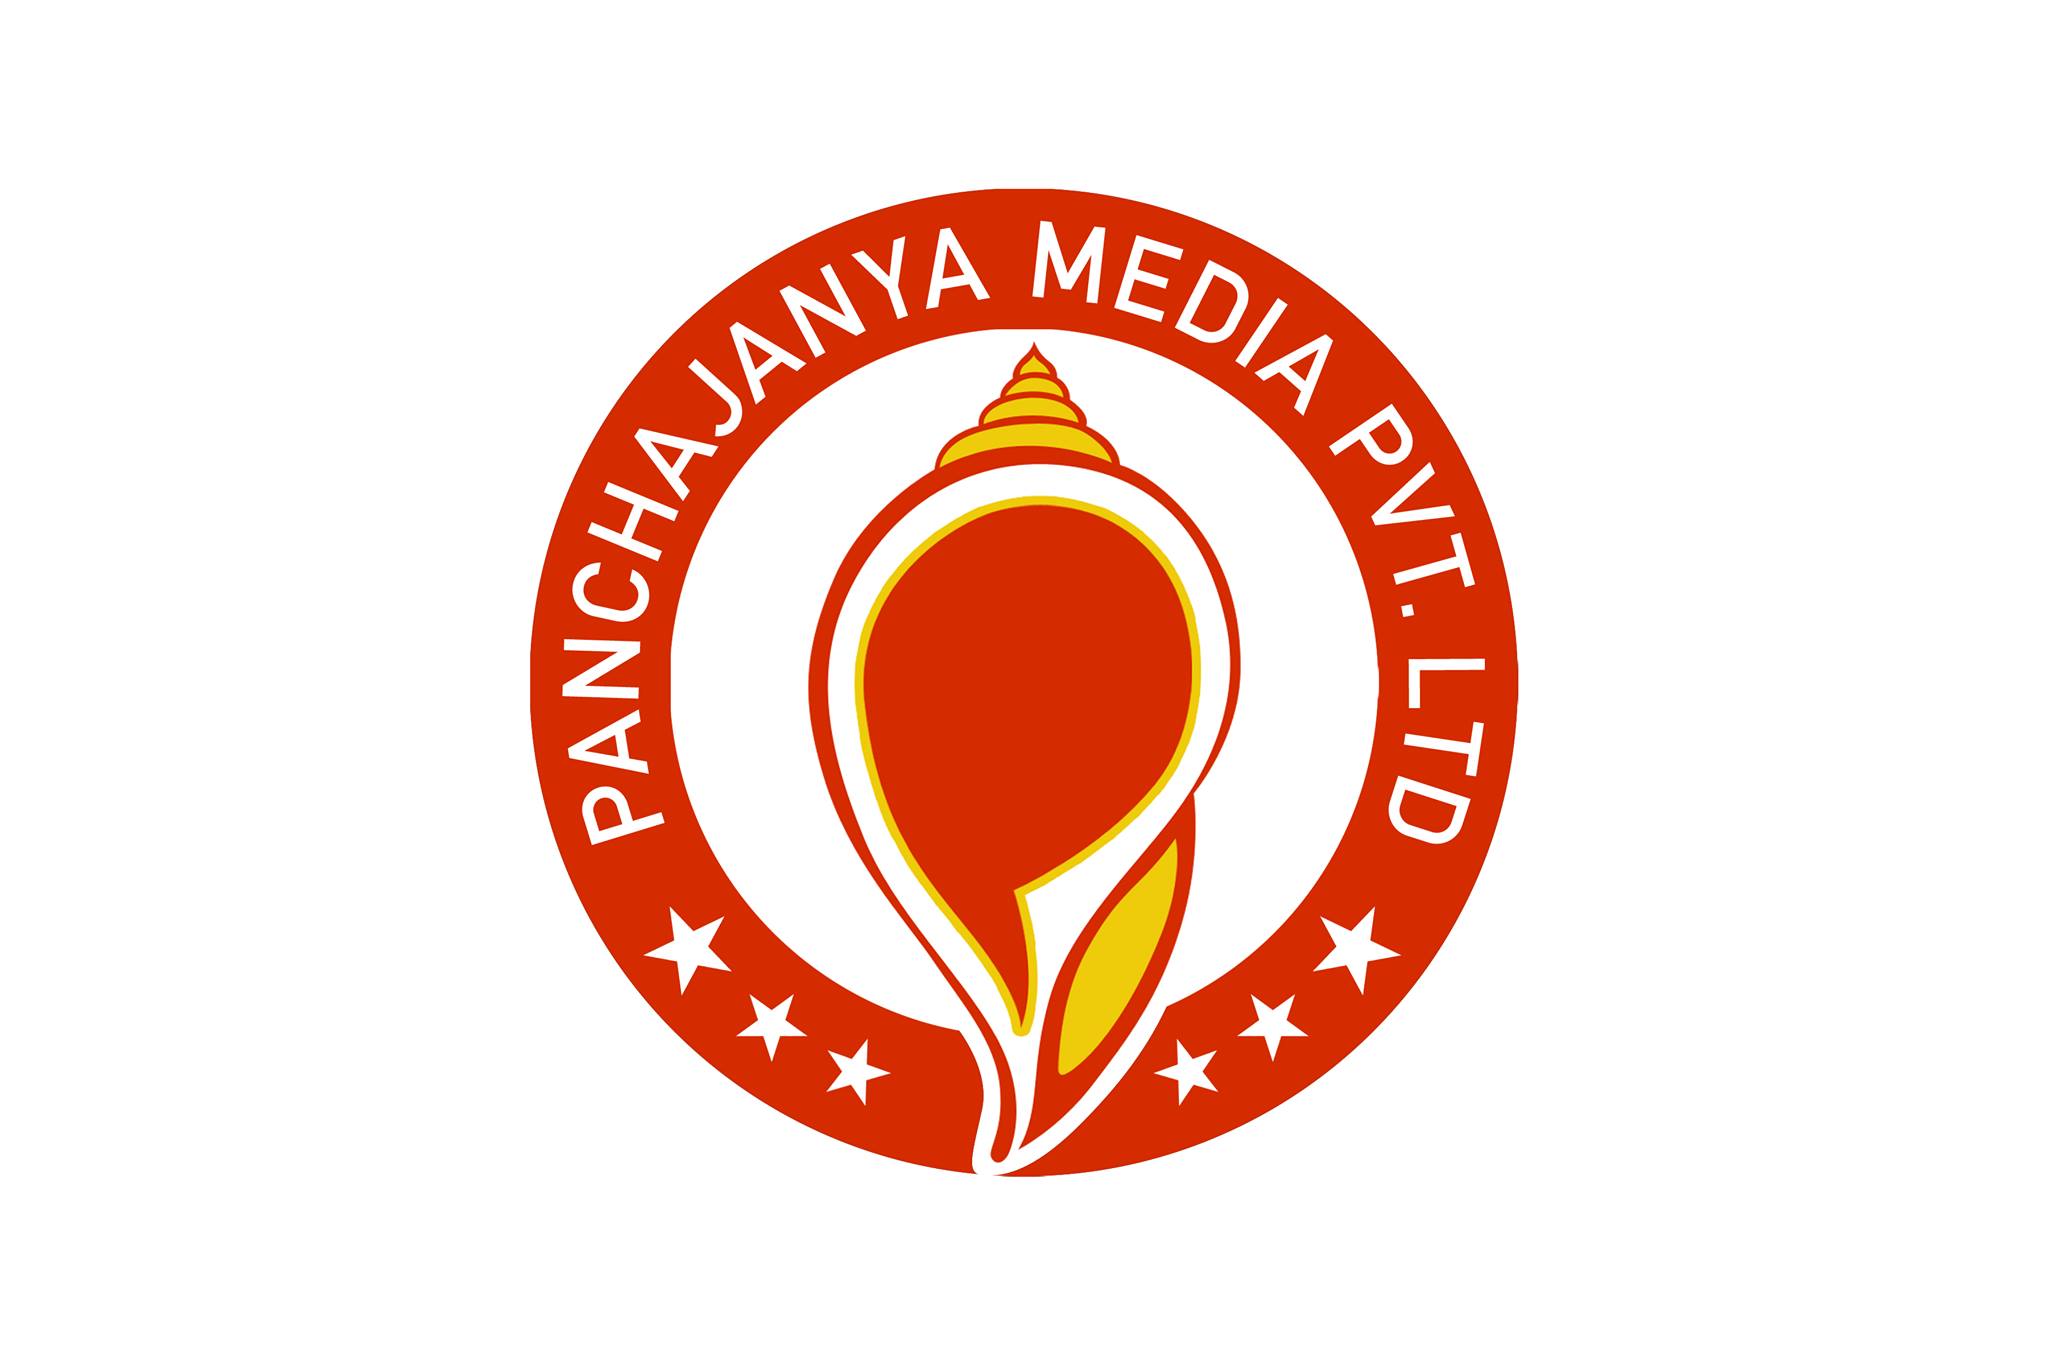 Panchajanya media